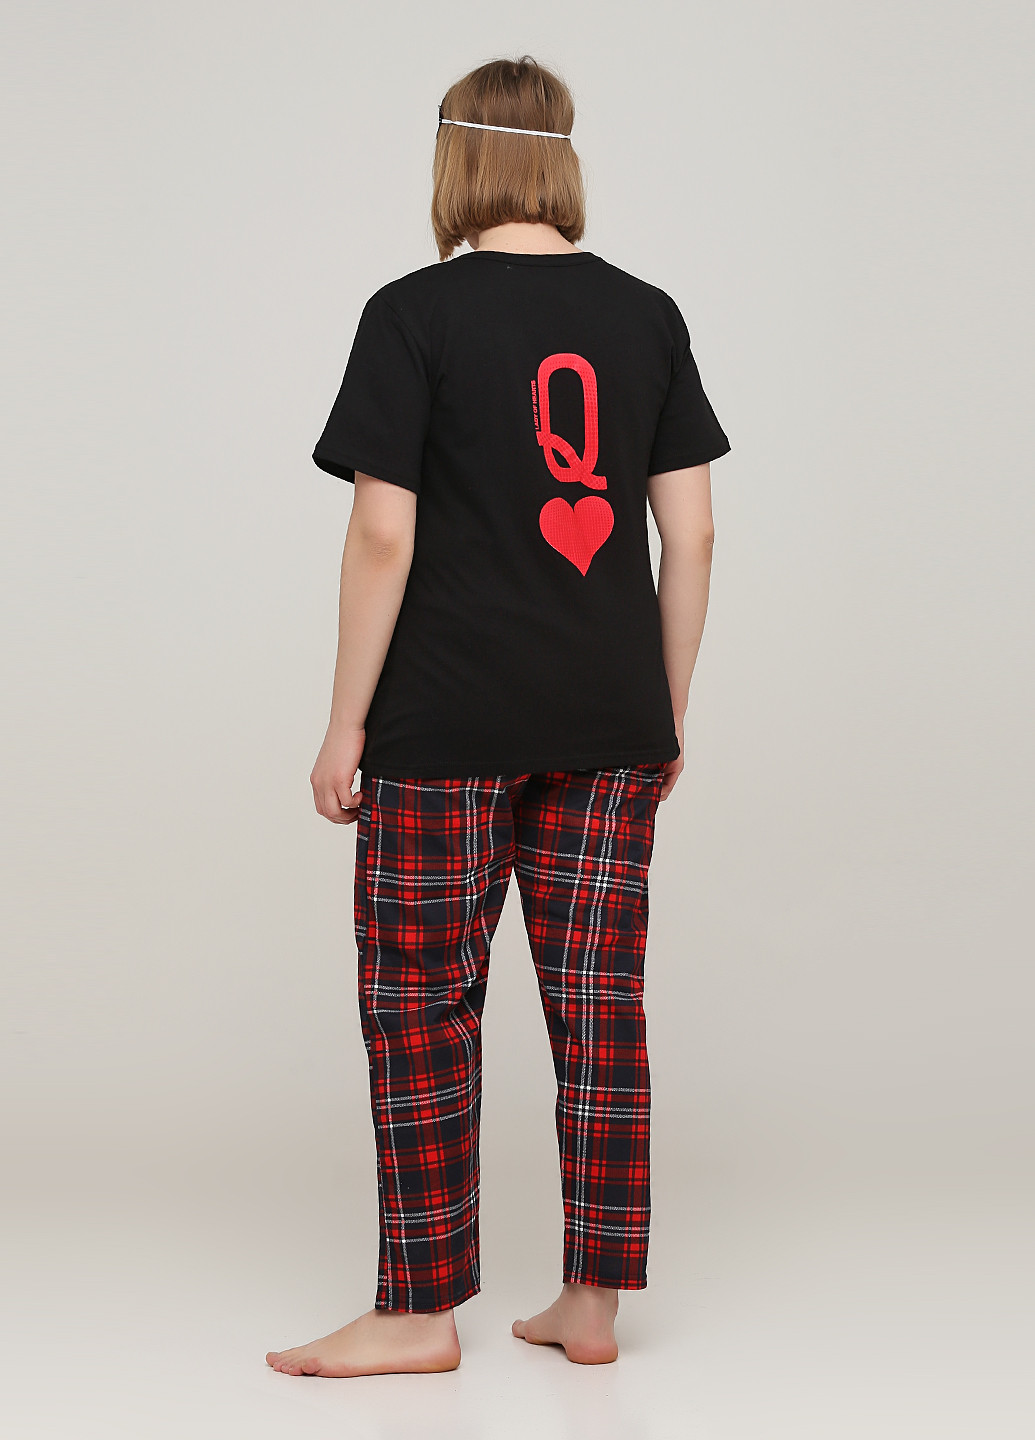 Червона всесезон піжама (футболка, штани, маска для сну) футболка + штани Трикомир